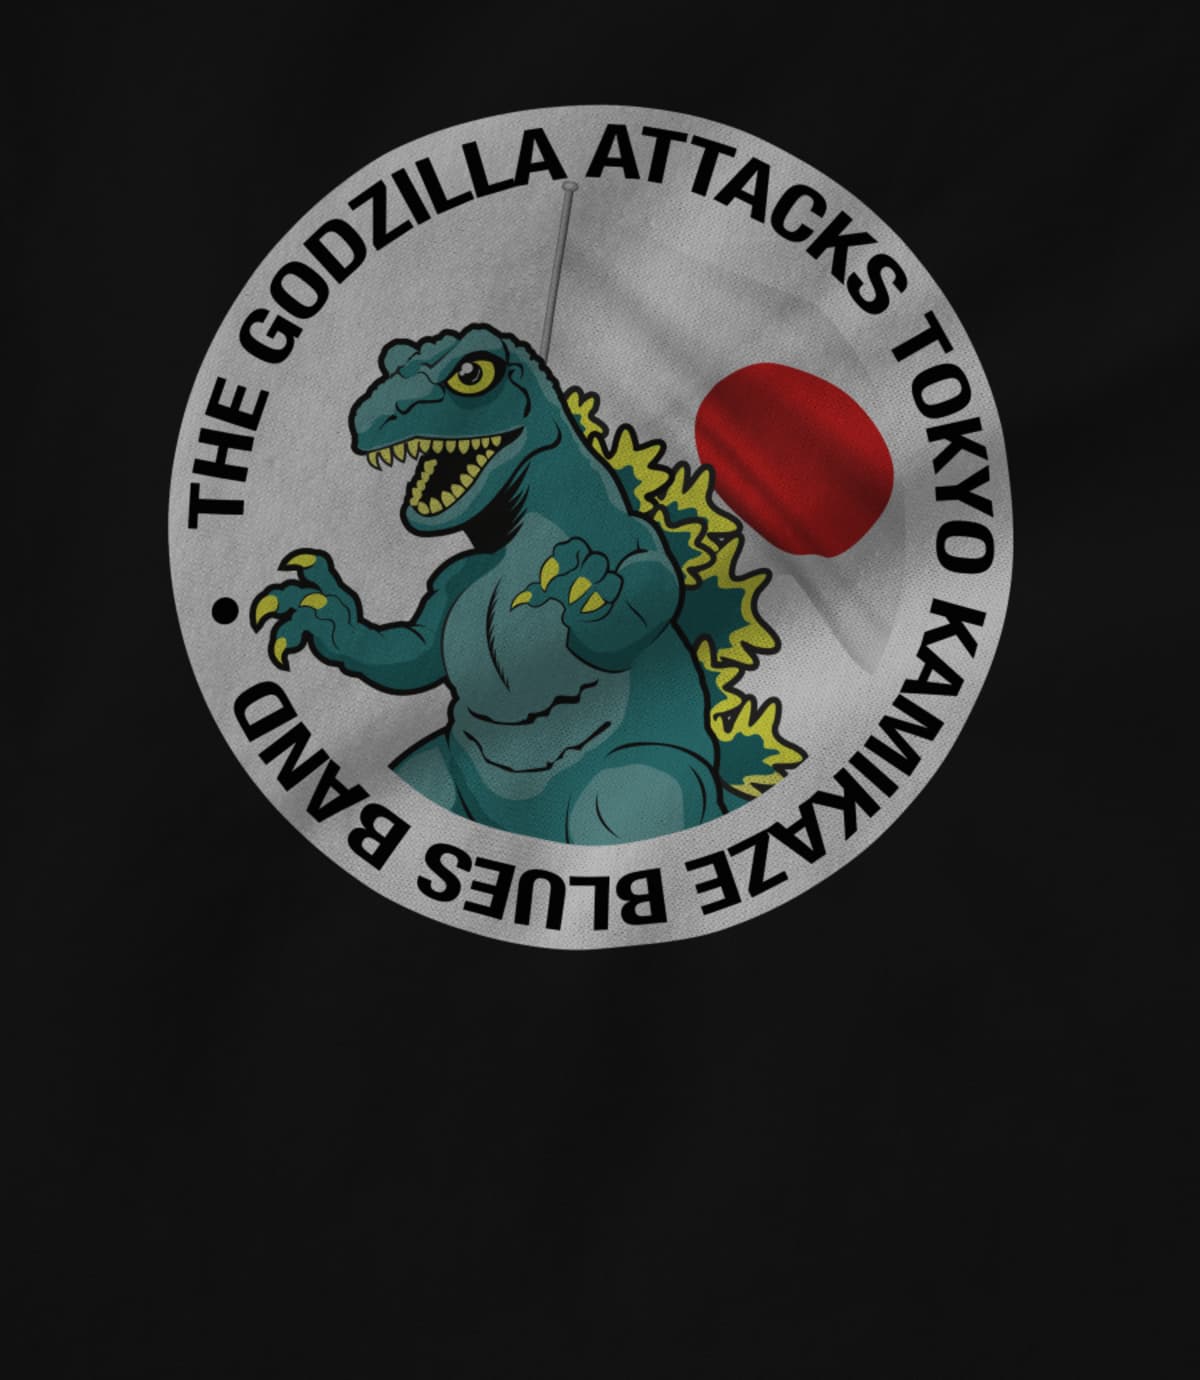 The Godzilla Attacks Tokyo Kamikaze Blues Band 